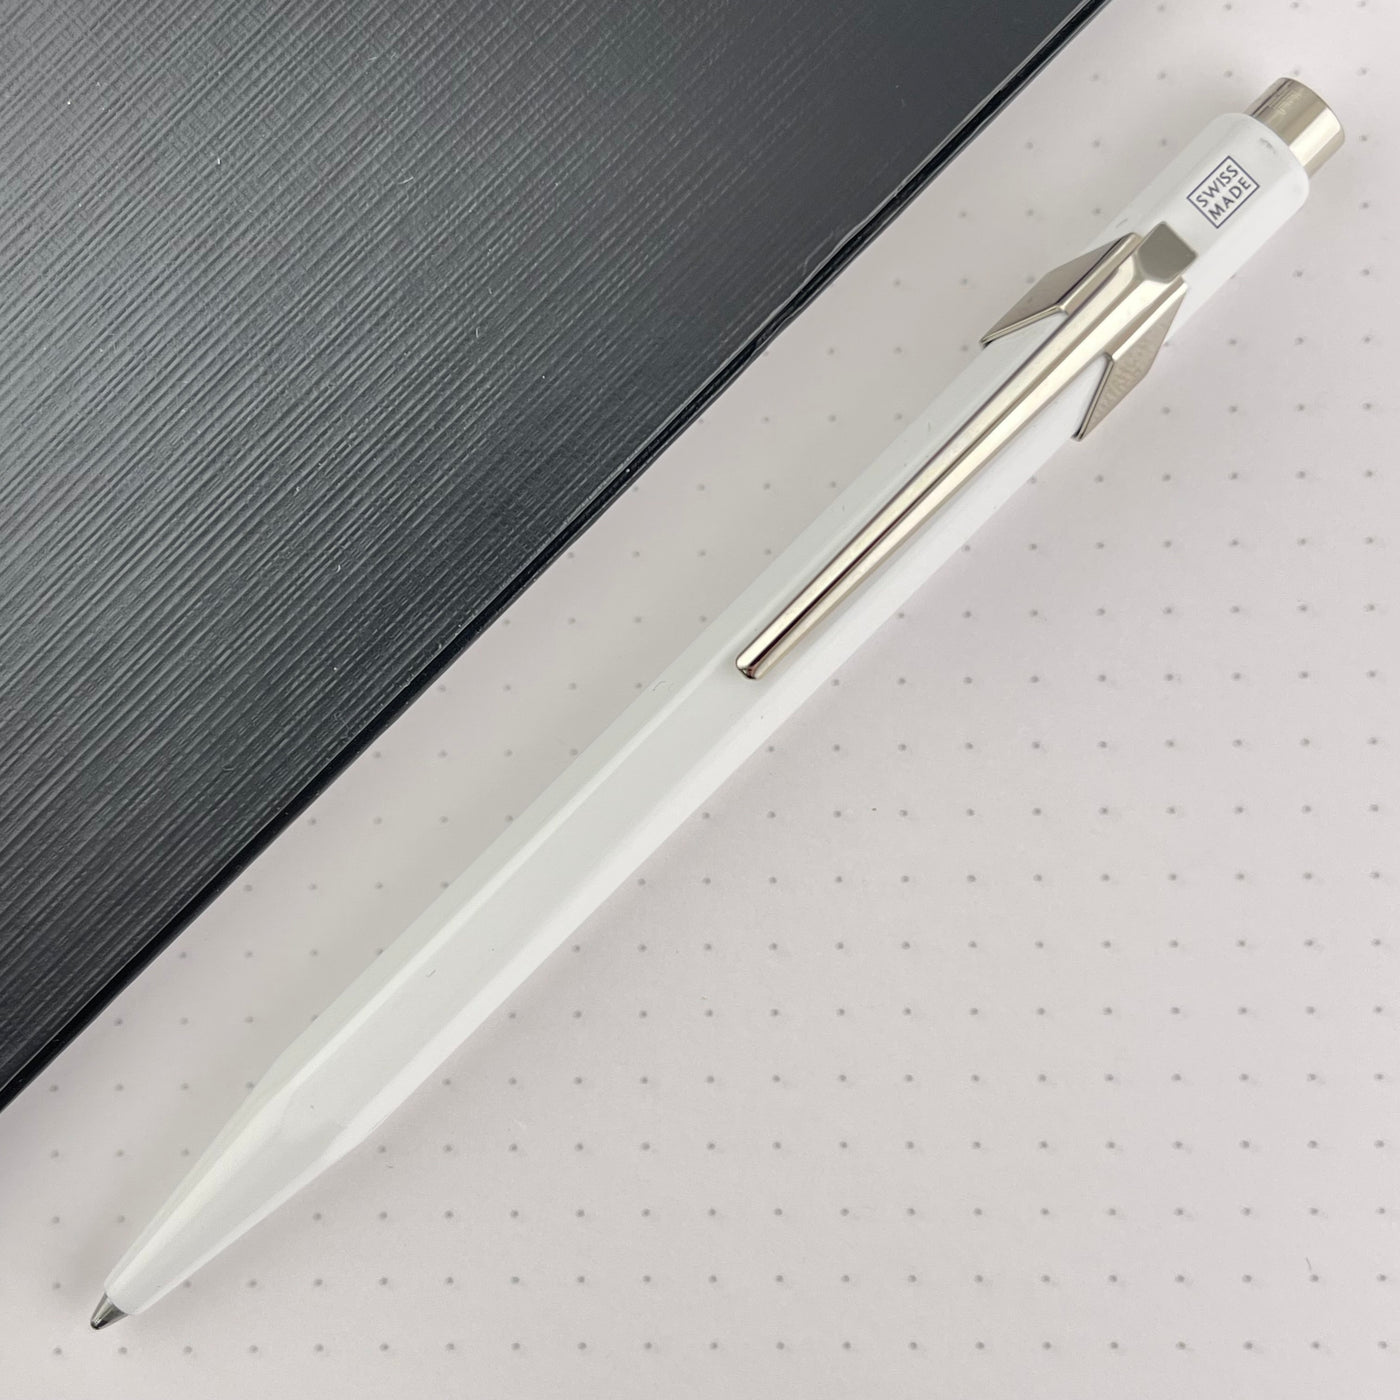 Caran d'Ache 849 Metal Ballpoint Pen - White